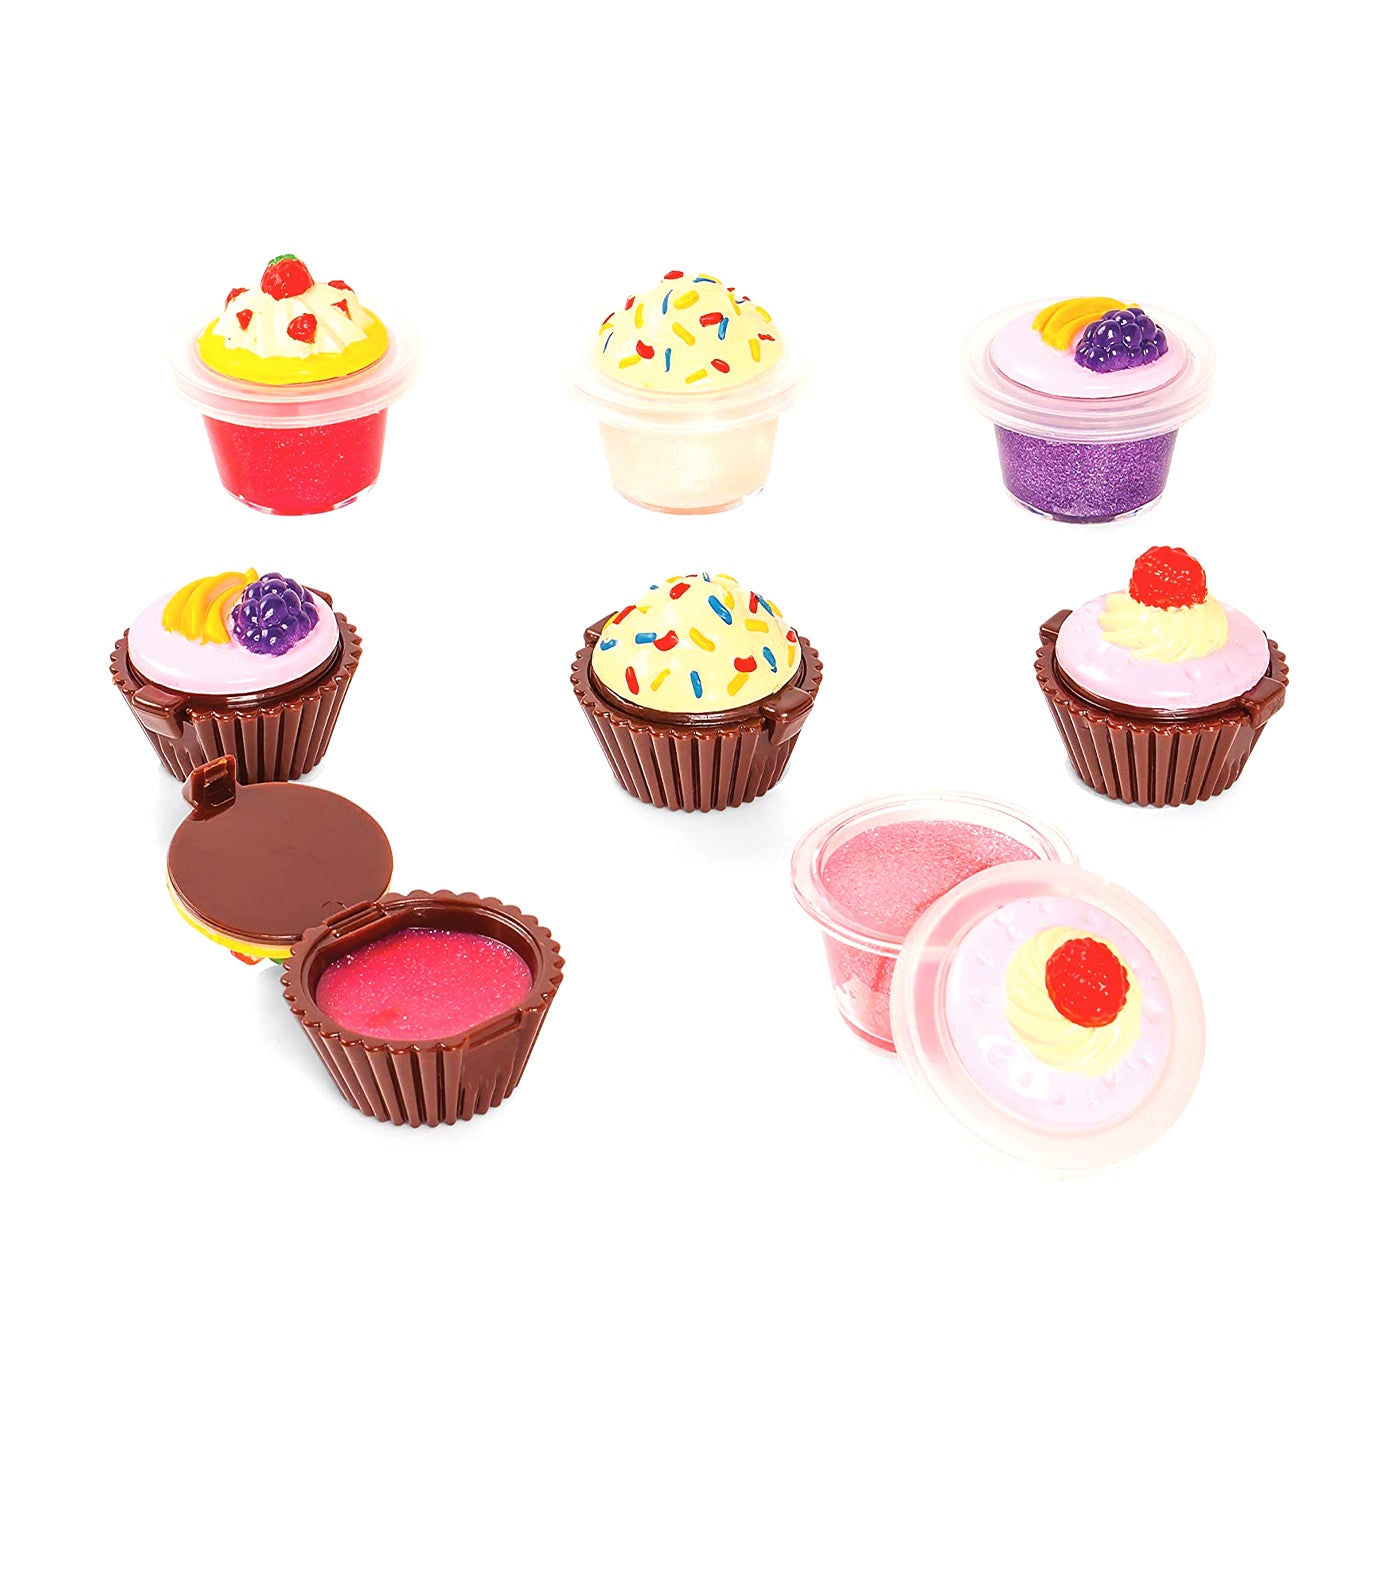 8in1 Cutie Cupcake Lip Gloss